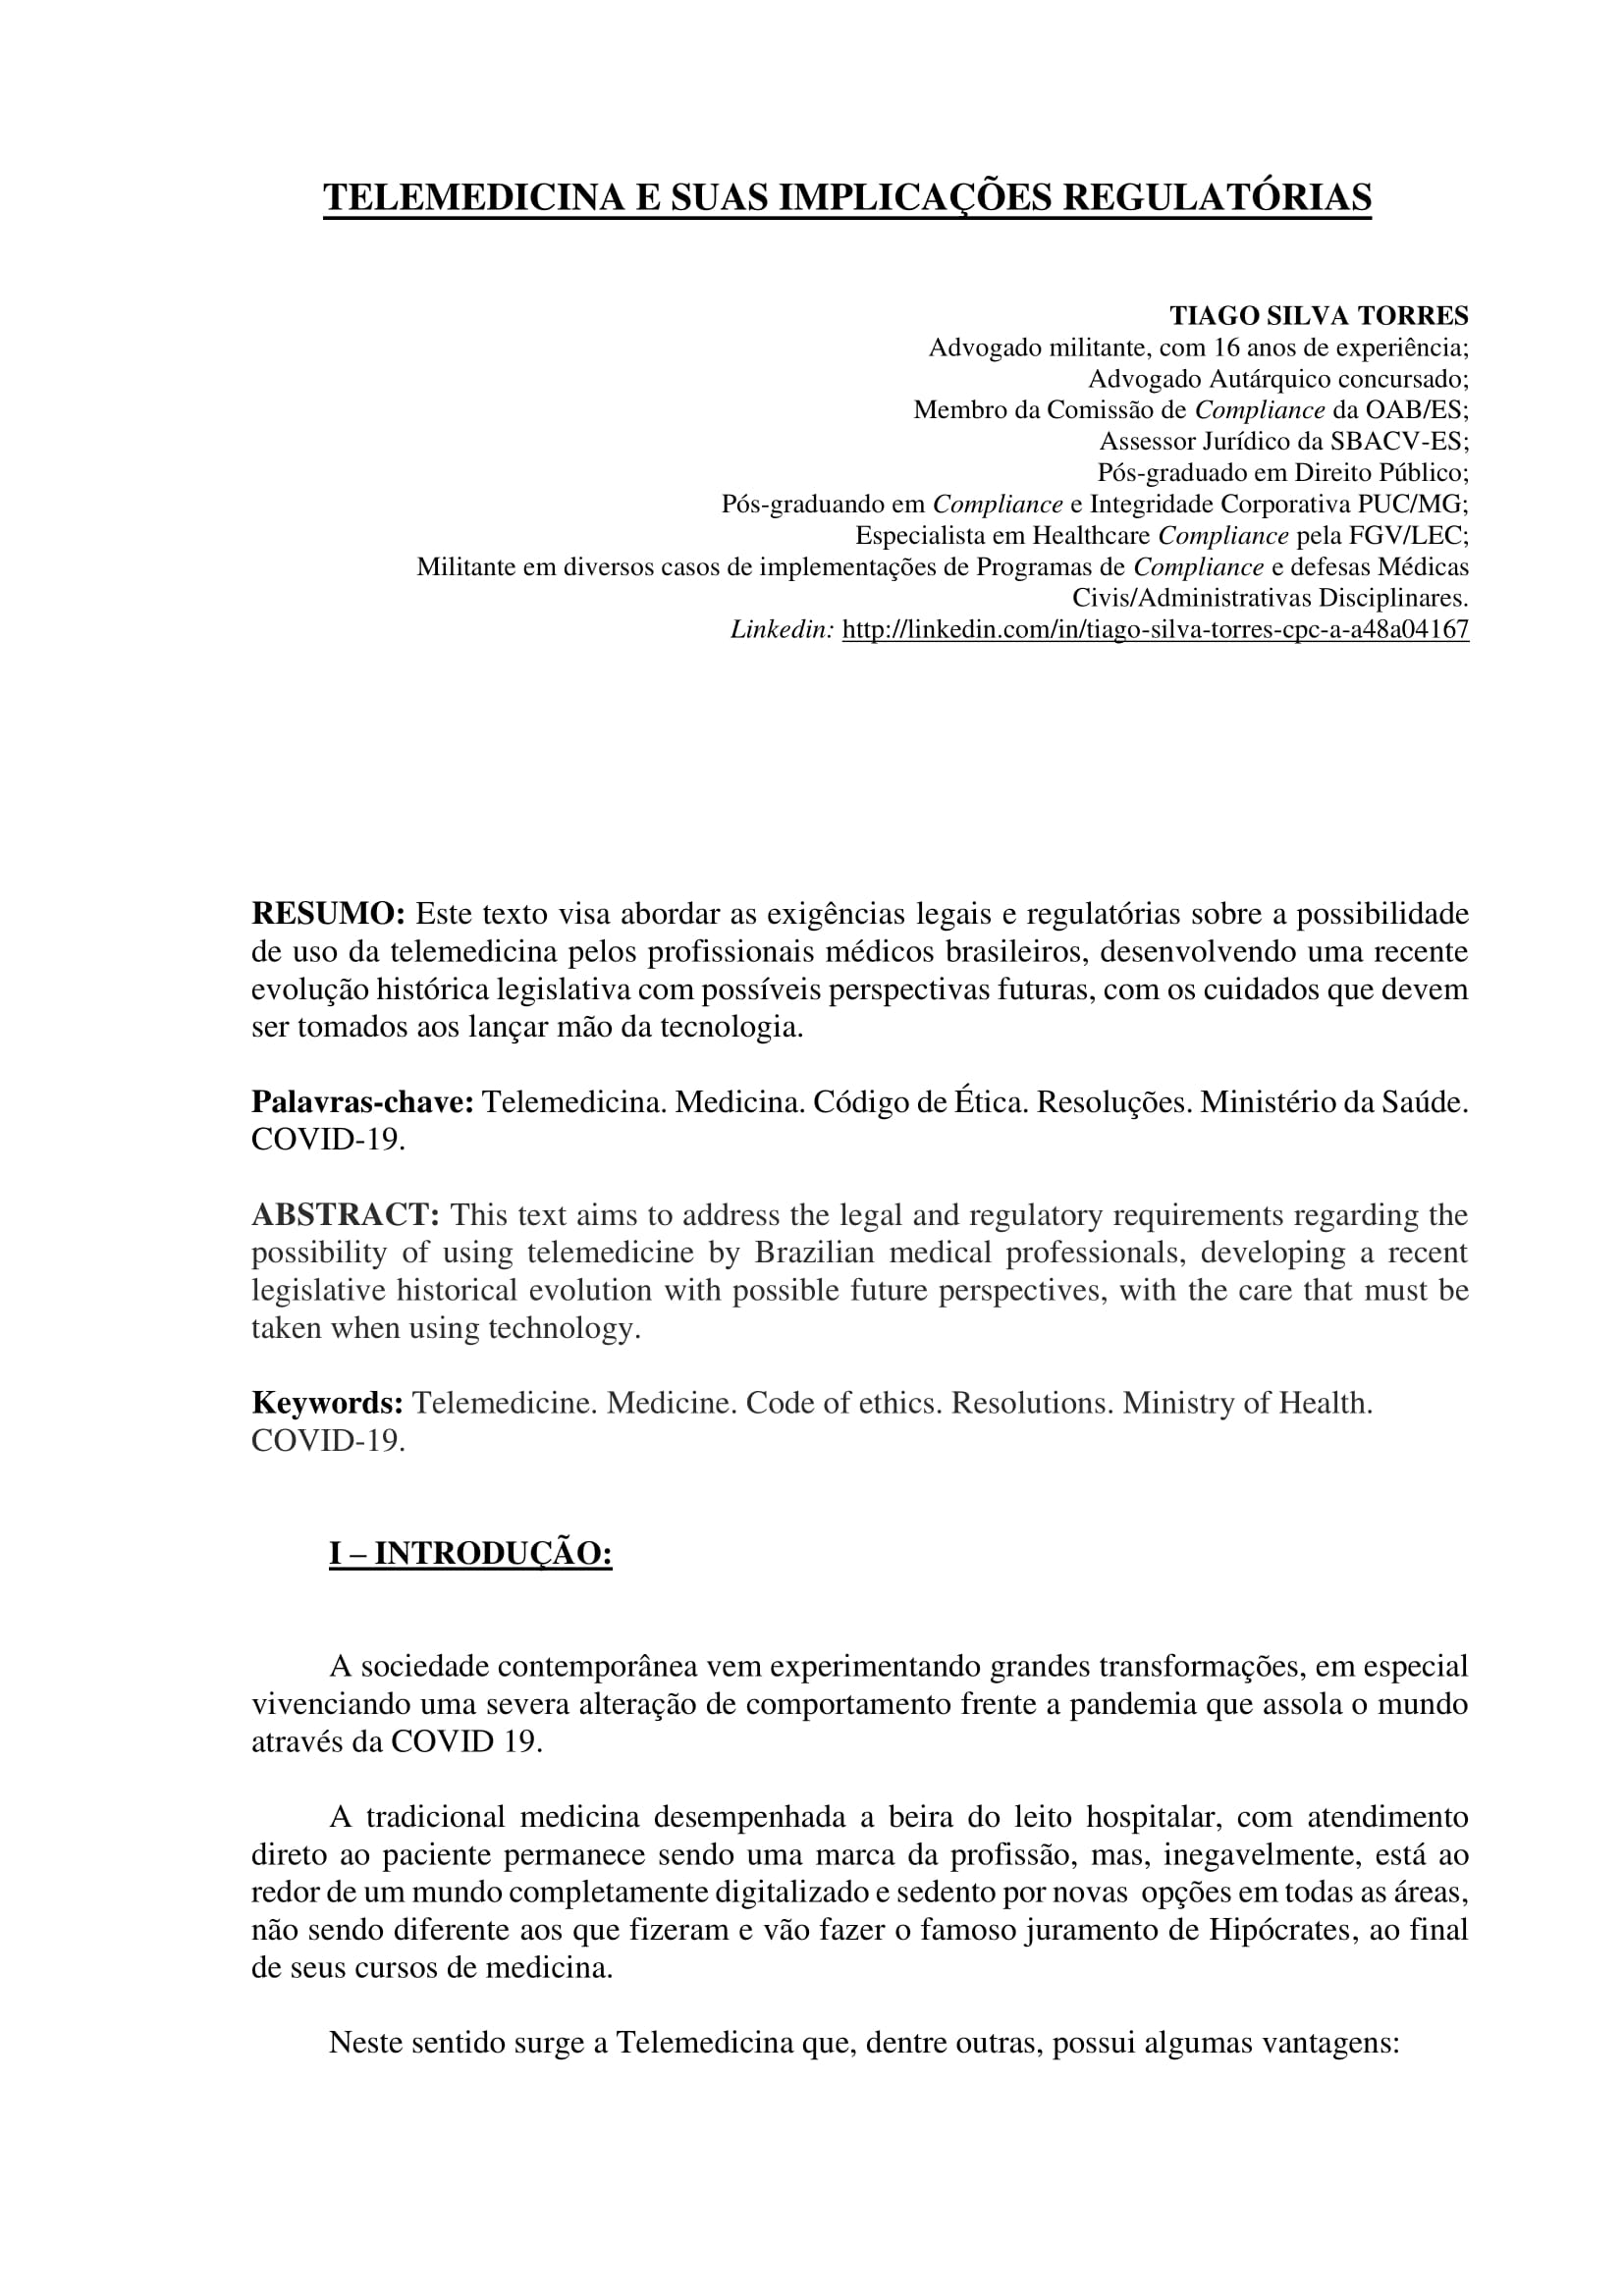 Artigo sobre Telemedicina e suas implicações regulatórias - Tiago Torres-01